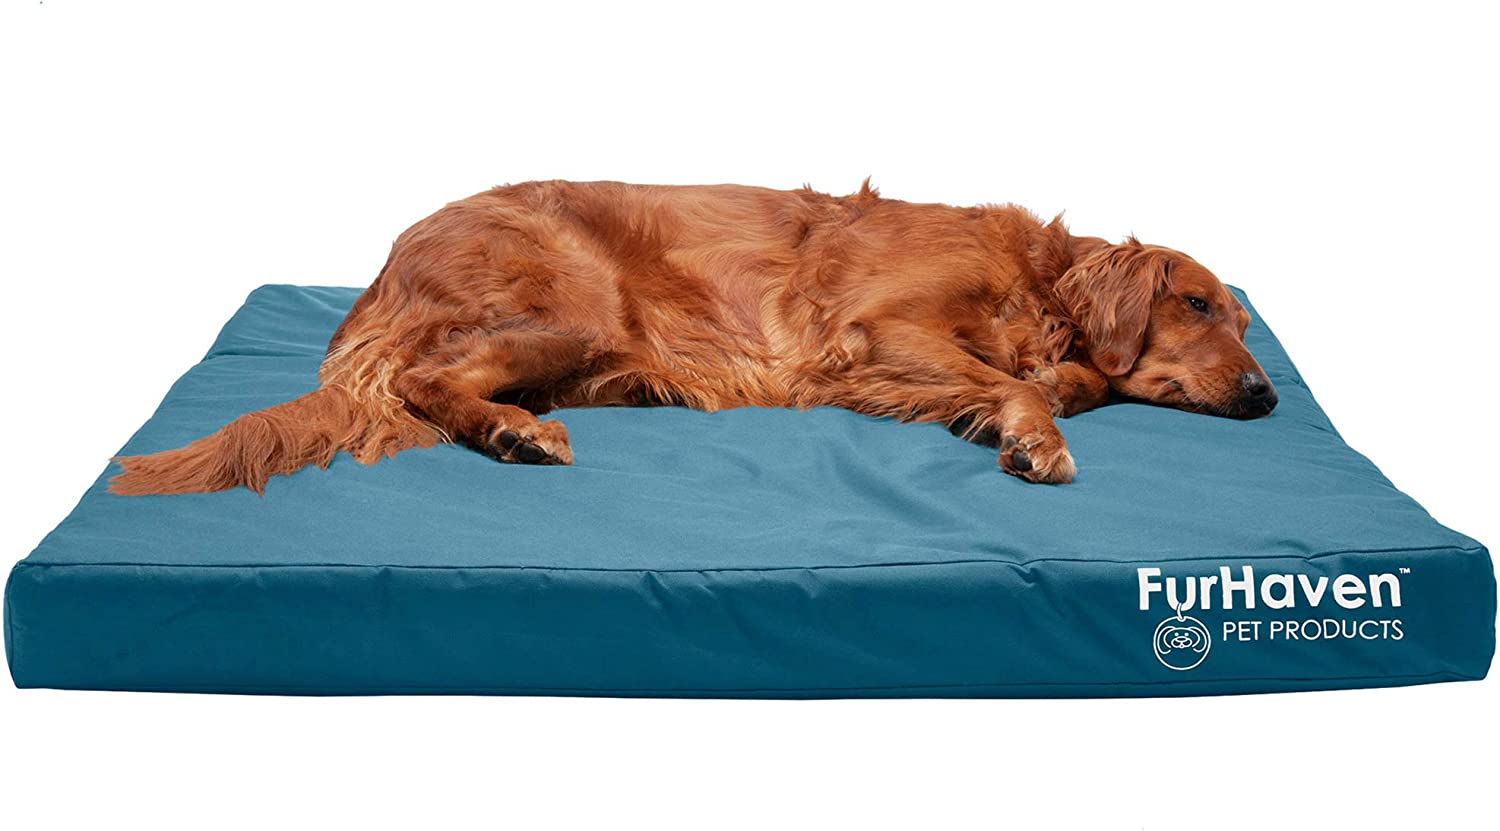 6. Furhaven Cooling Gel Foam Dog Bed